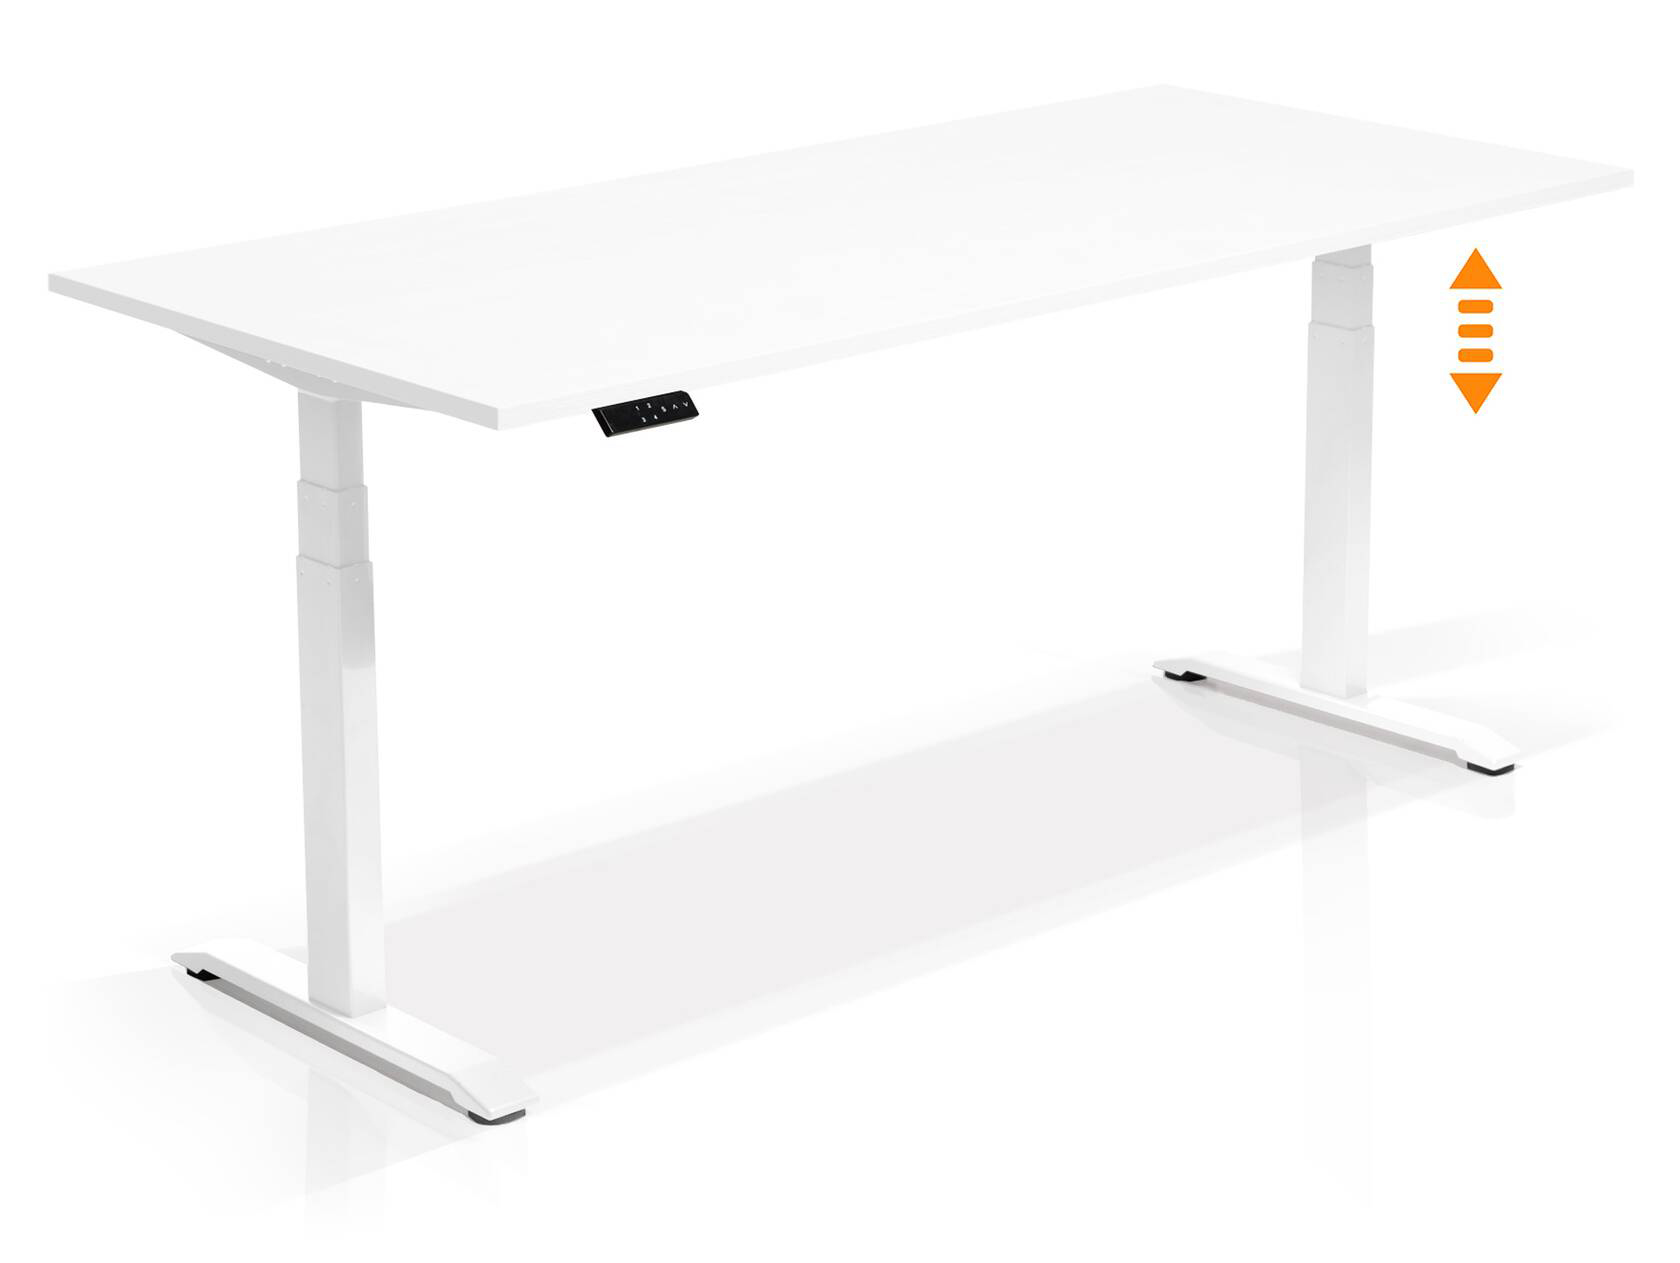 Hoehenverstellbarer Schreibtisch “WEWE” von LHL in Modellvariante weisse Platte weißes Gestell bei LHL im Onlineshop kaufen - Seitenansicht